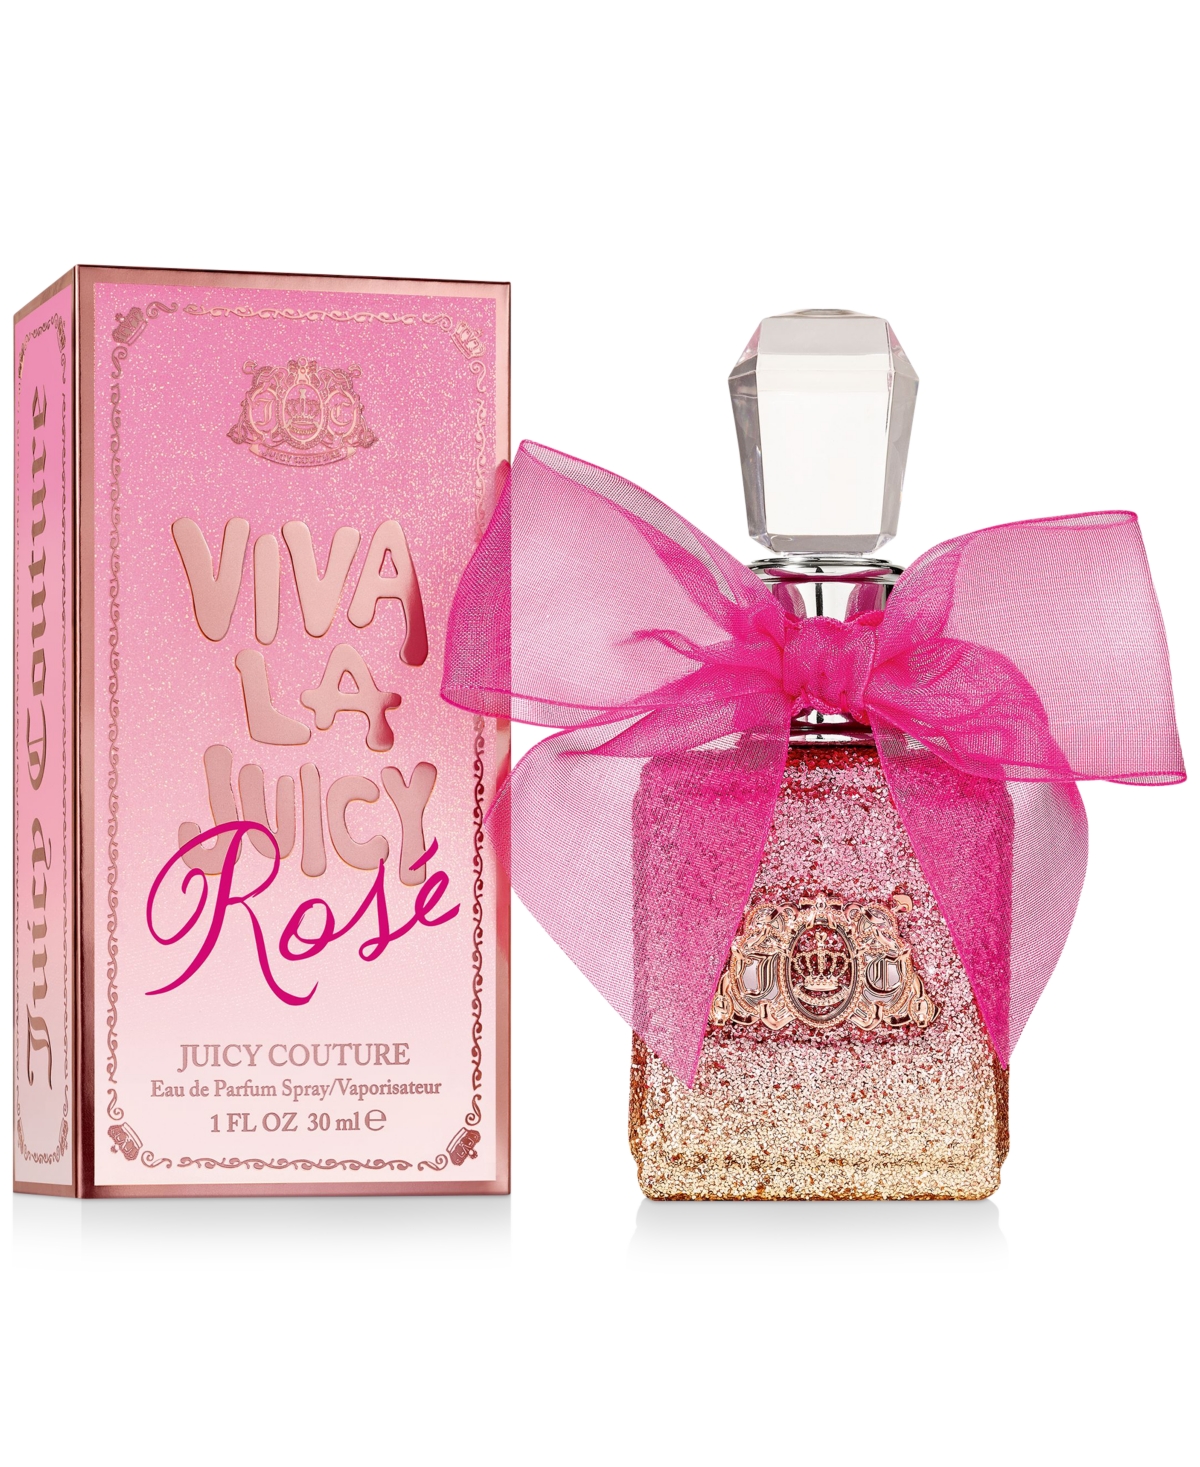 Viva La Juicy Rose Eau de Parfum Spray, 1-oz.